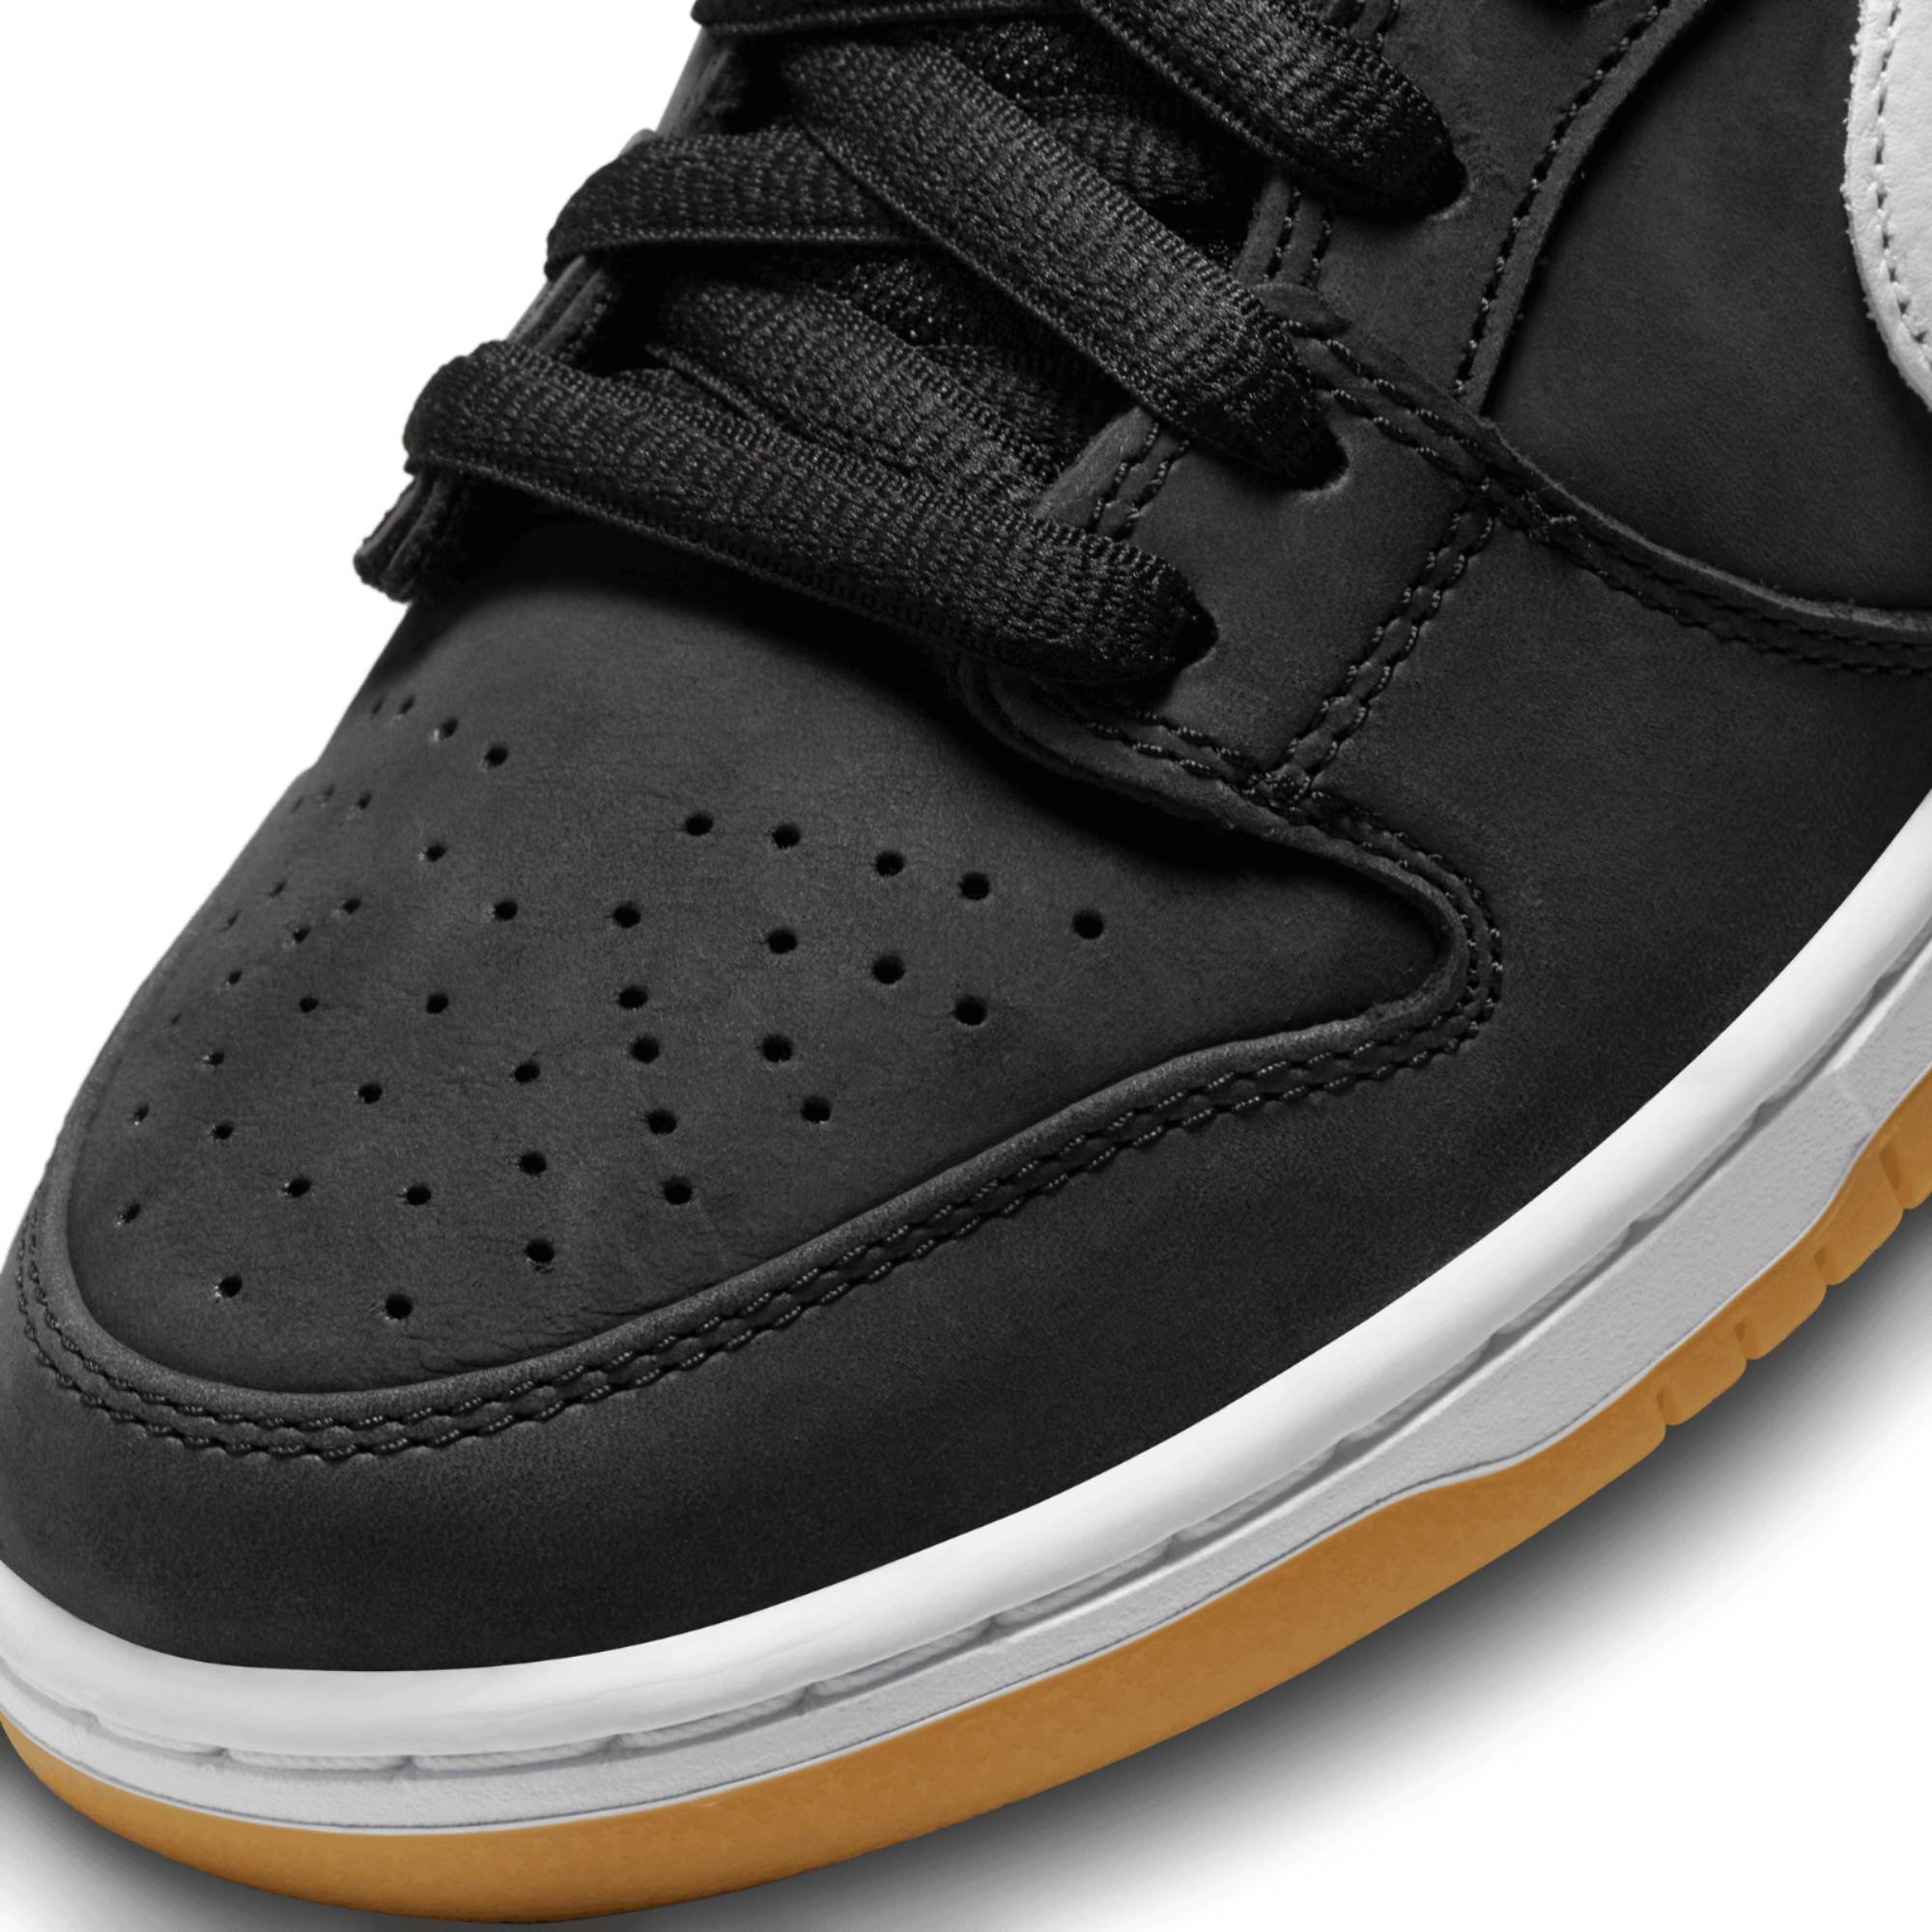 Nike Sb Dunk Low ’Black Gum’ Sneakers